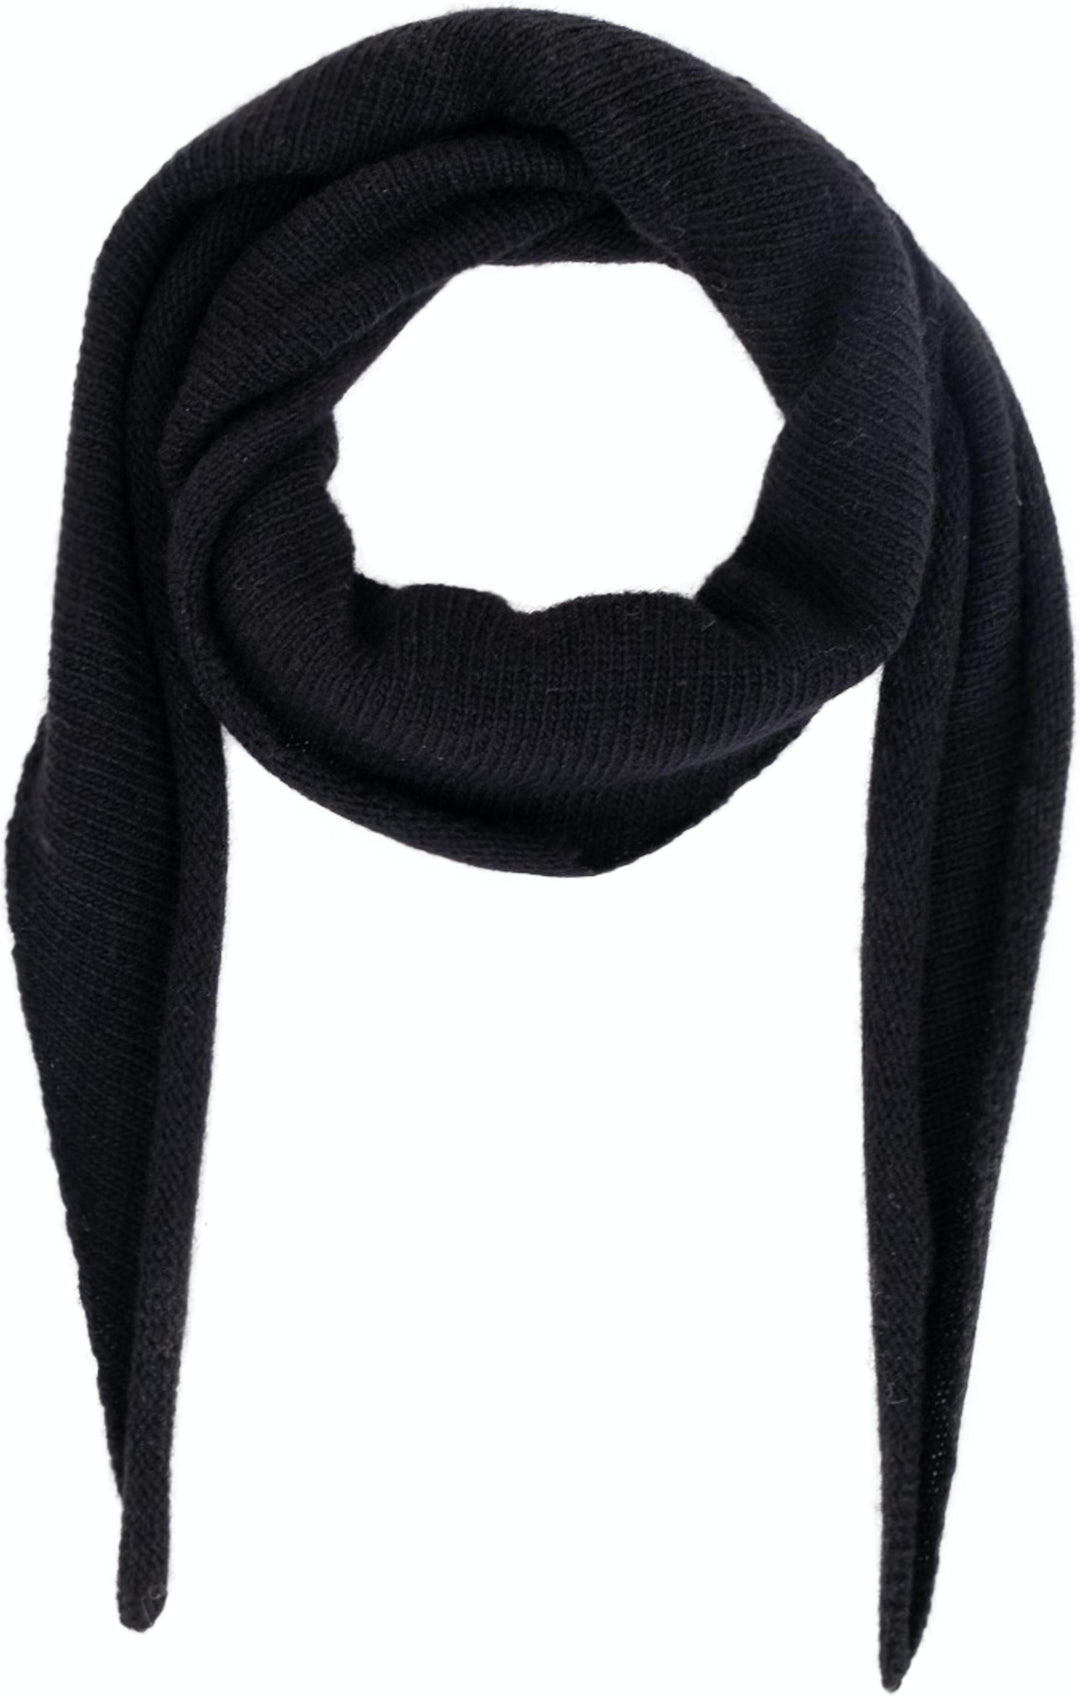 Neo Noir - Misty Knit Scarf - Black